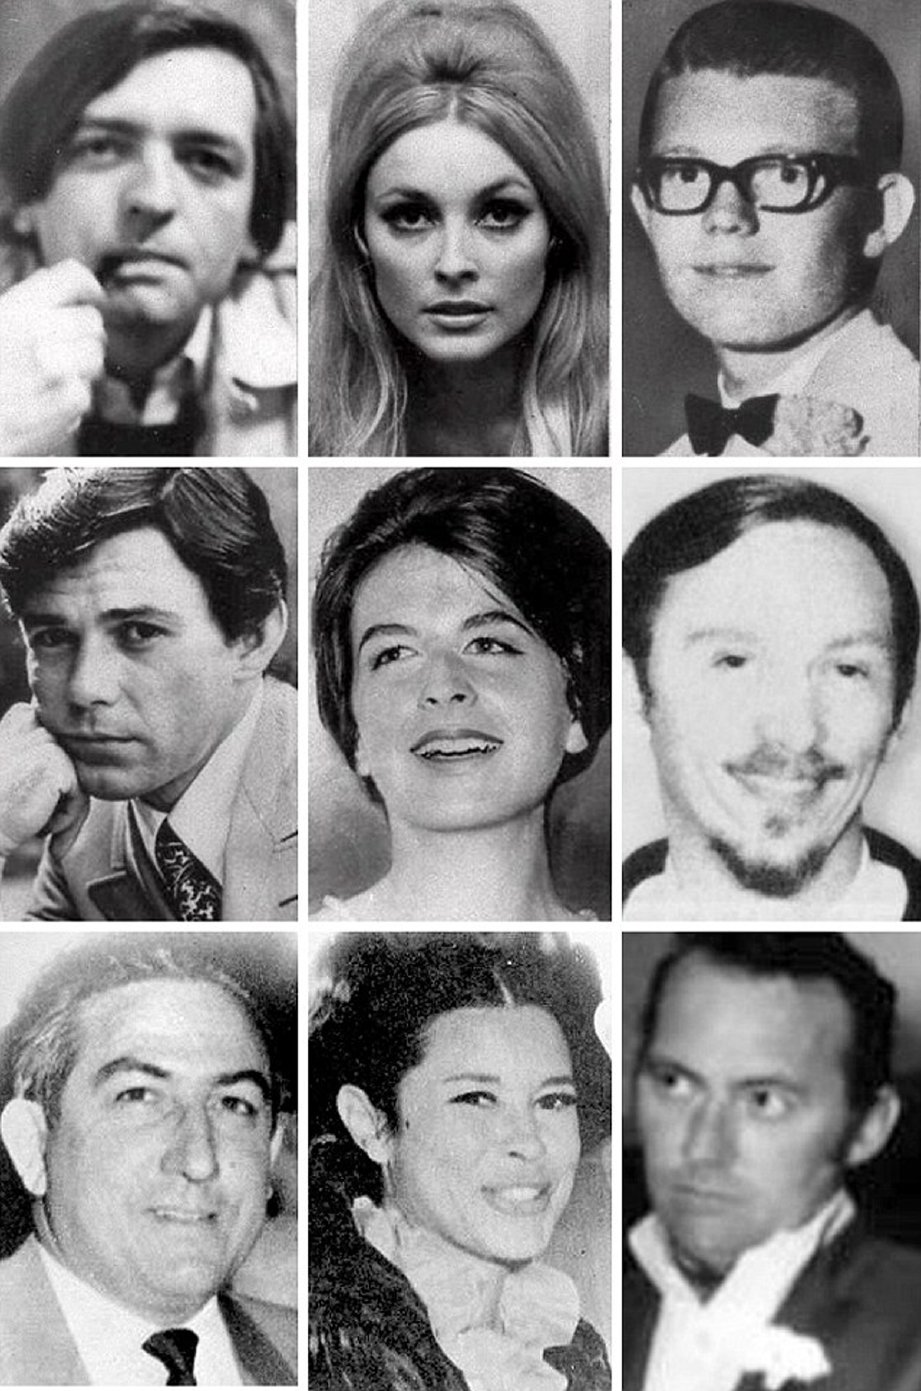 Mangsa pembunuhan Manson dan kumpulannya, (barisan atas dari kiri) Voytech Frykowski, Sharon Tate, Stephen Parent. (Barisan tengah dari dari kiri) Jay Sebring, Abigail Folger, Gary Hinman. (Barisan bawah dari kiri) Leno LaBianca, Rosemary LaBianca dan Donald Shea. - Foto DM